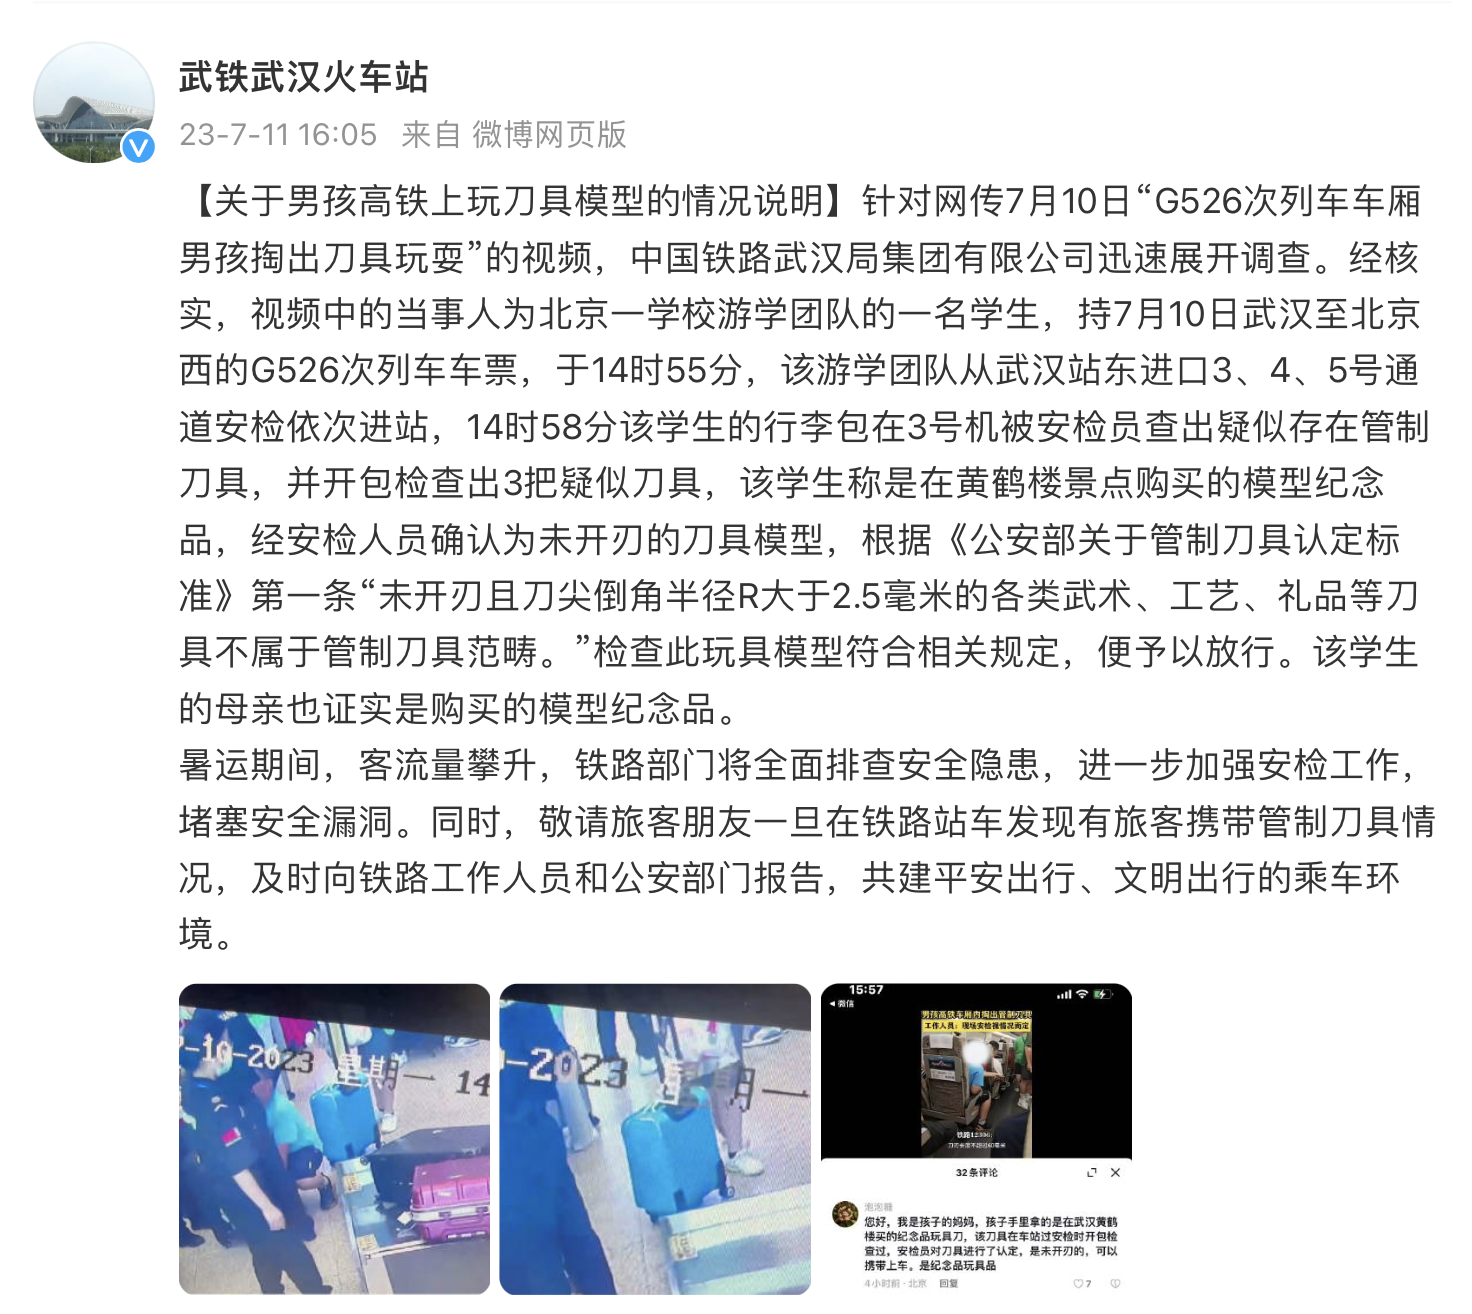 武汉解封前一天 工作人员对武汉地区火车站进行全面消毒